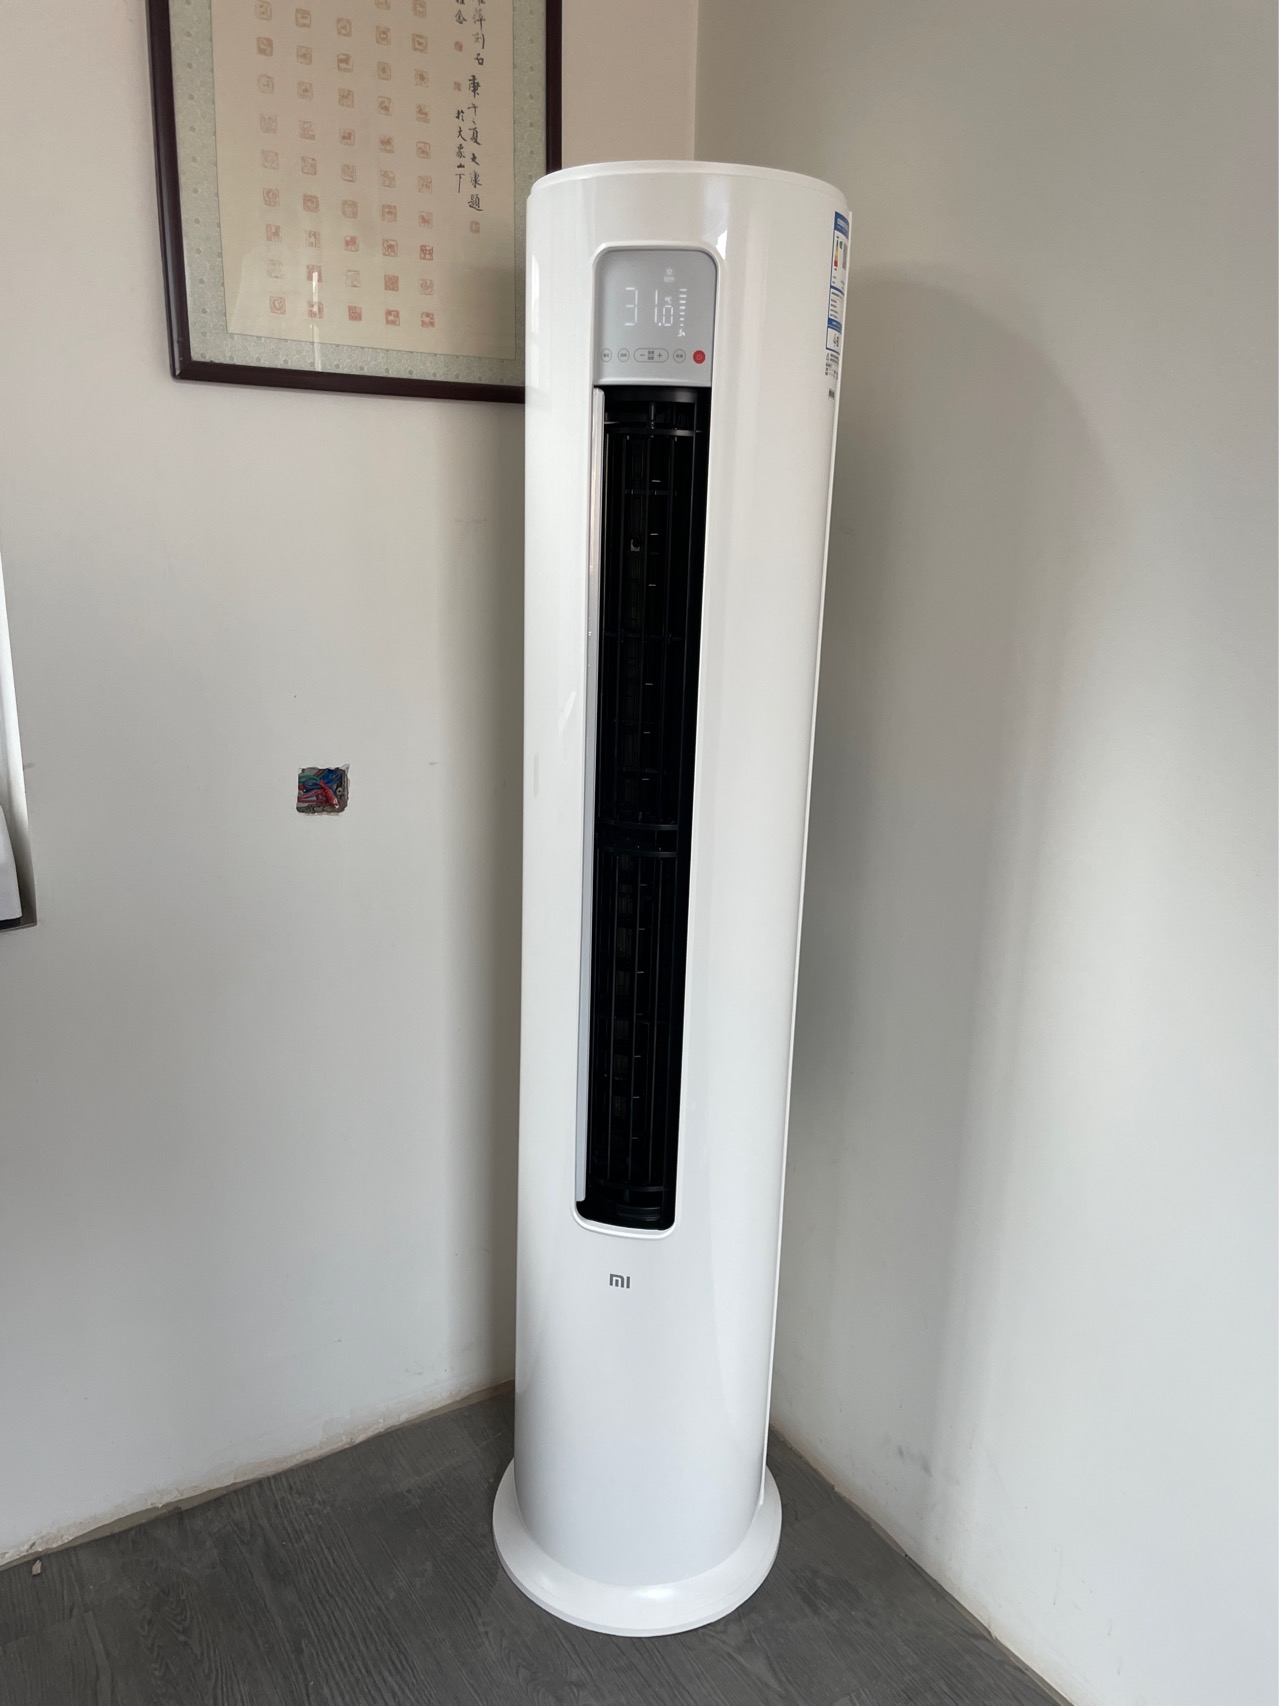 小米(MI)2匹柜机空调 全直流变频一级新能效冷暖客厅圆柱式巨省电米家手机互联家用安静智能清洁KFR-51LW/N1A1晒单图